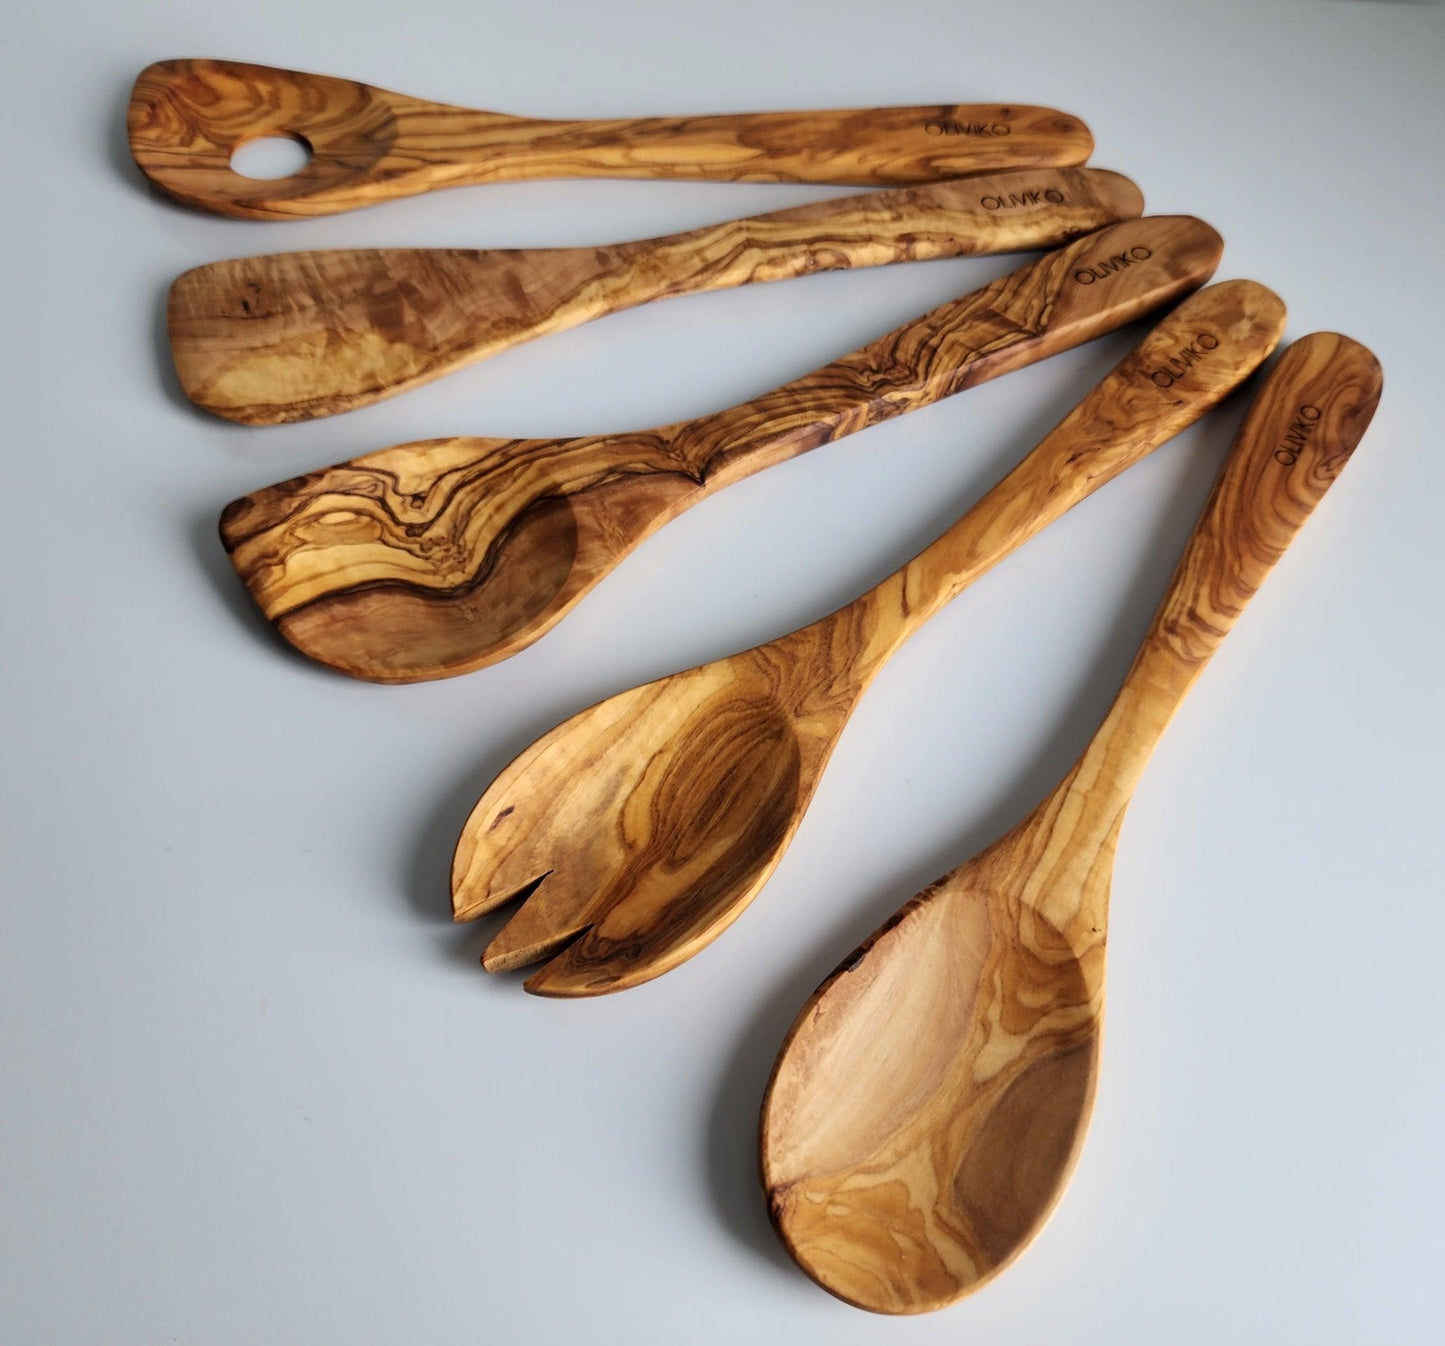 Handmade Olive Wood Holder+ Utensils Kit of 5 Utensils Holder+ 1 Spatula + 4 Spoon 100% Olive Wood